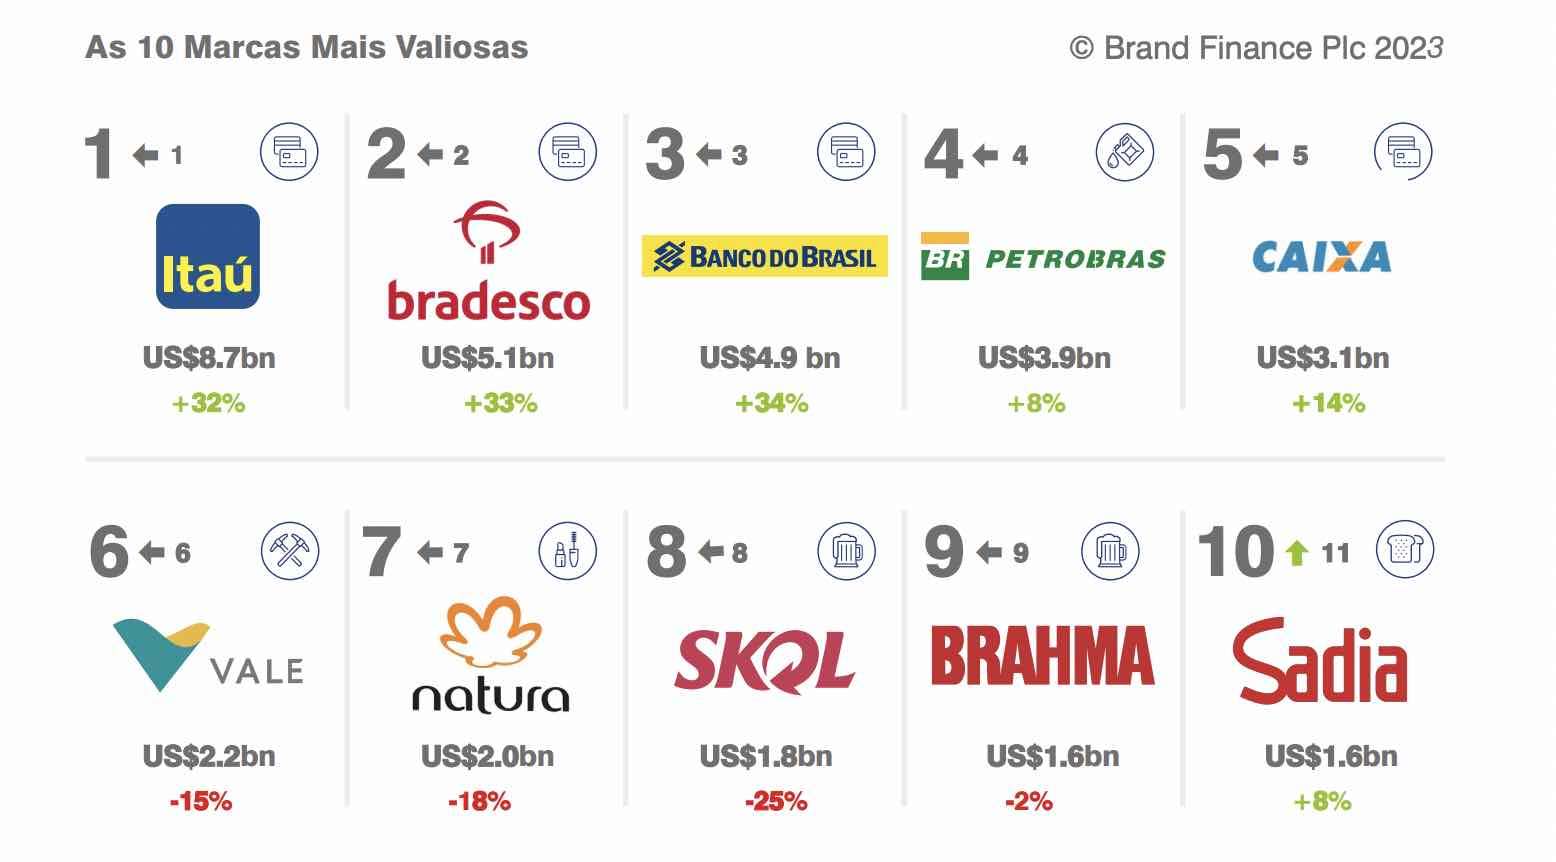 Itaú lidera ranking de marcas mais valiosas do Brasil feito pelo consultoria britânica Brand Finance, seguido por Bradesco e BB